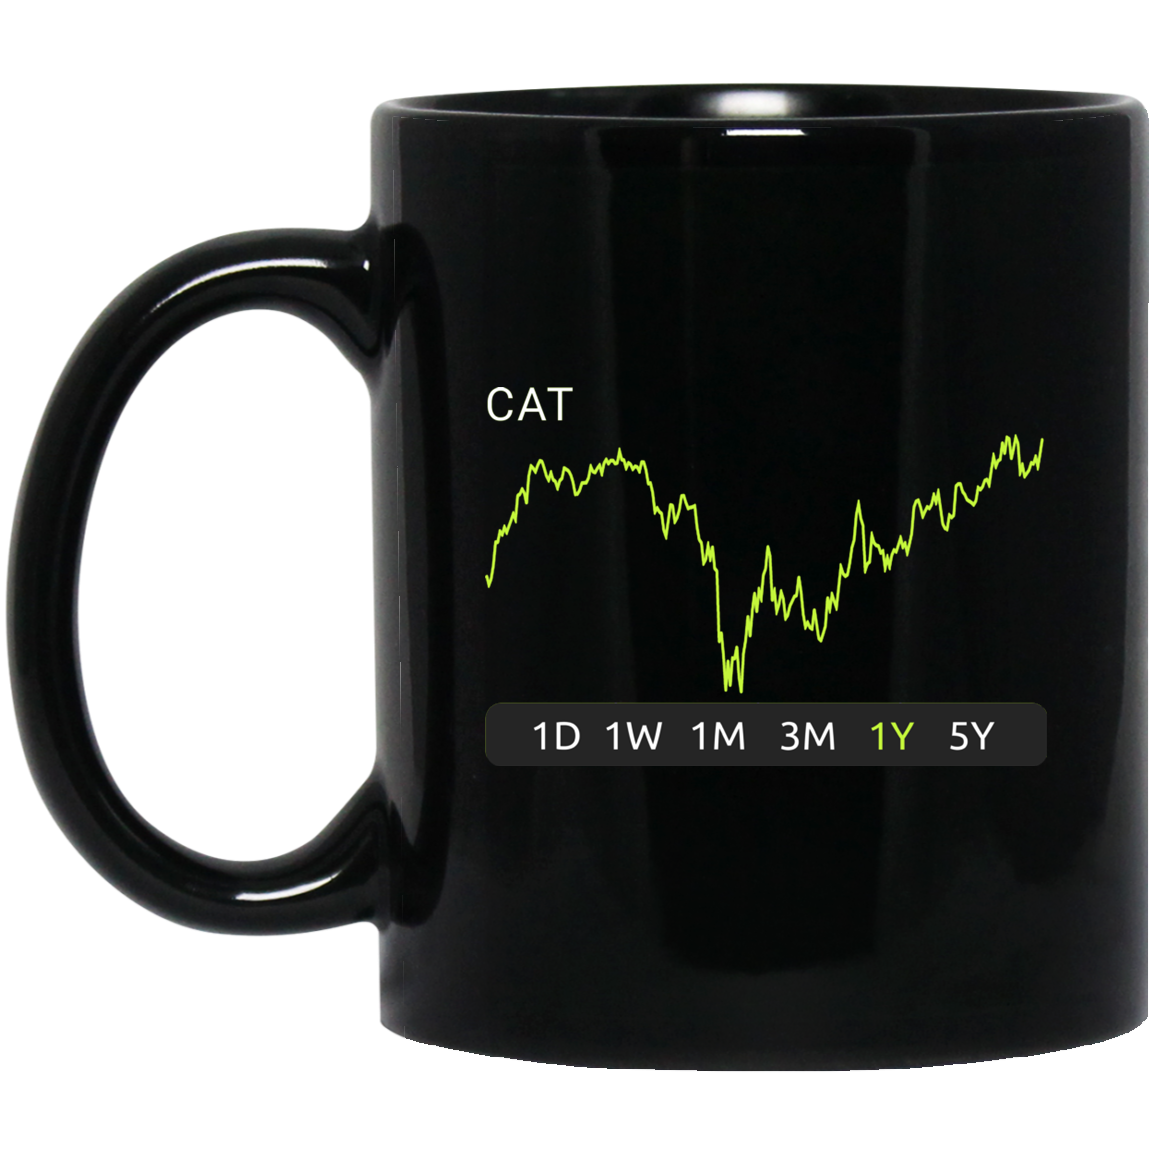 CAT Stock 1y Mug